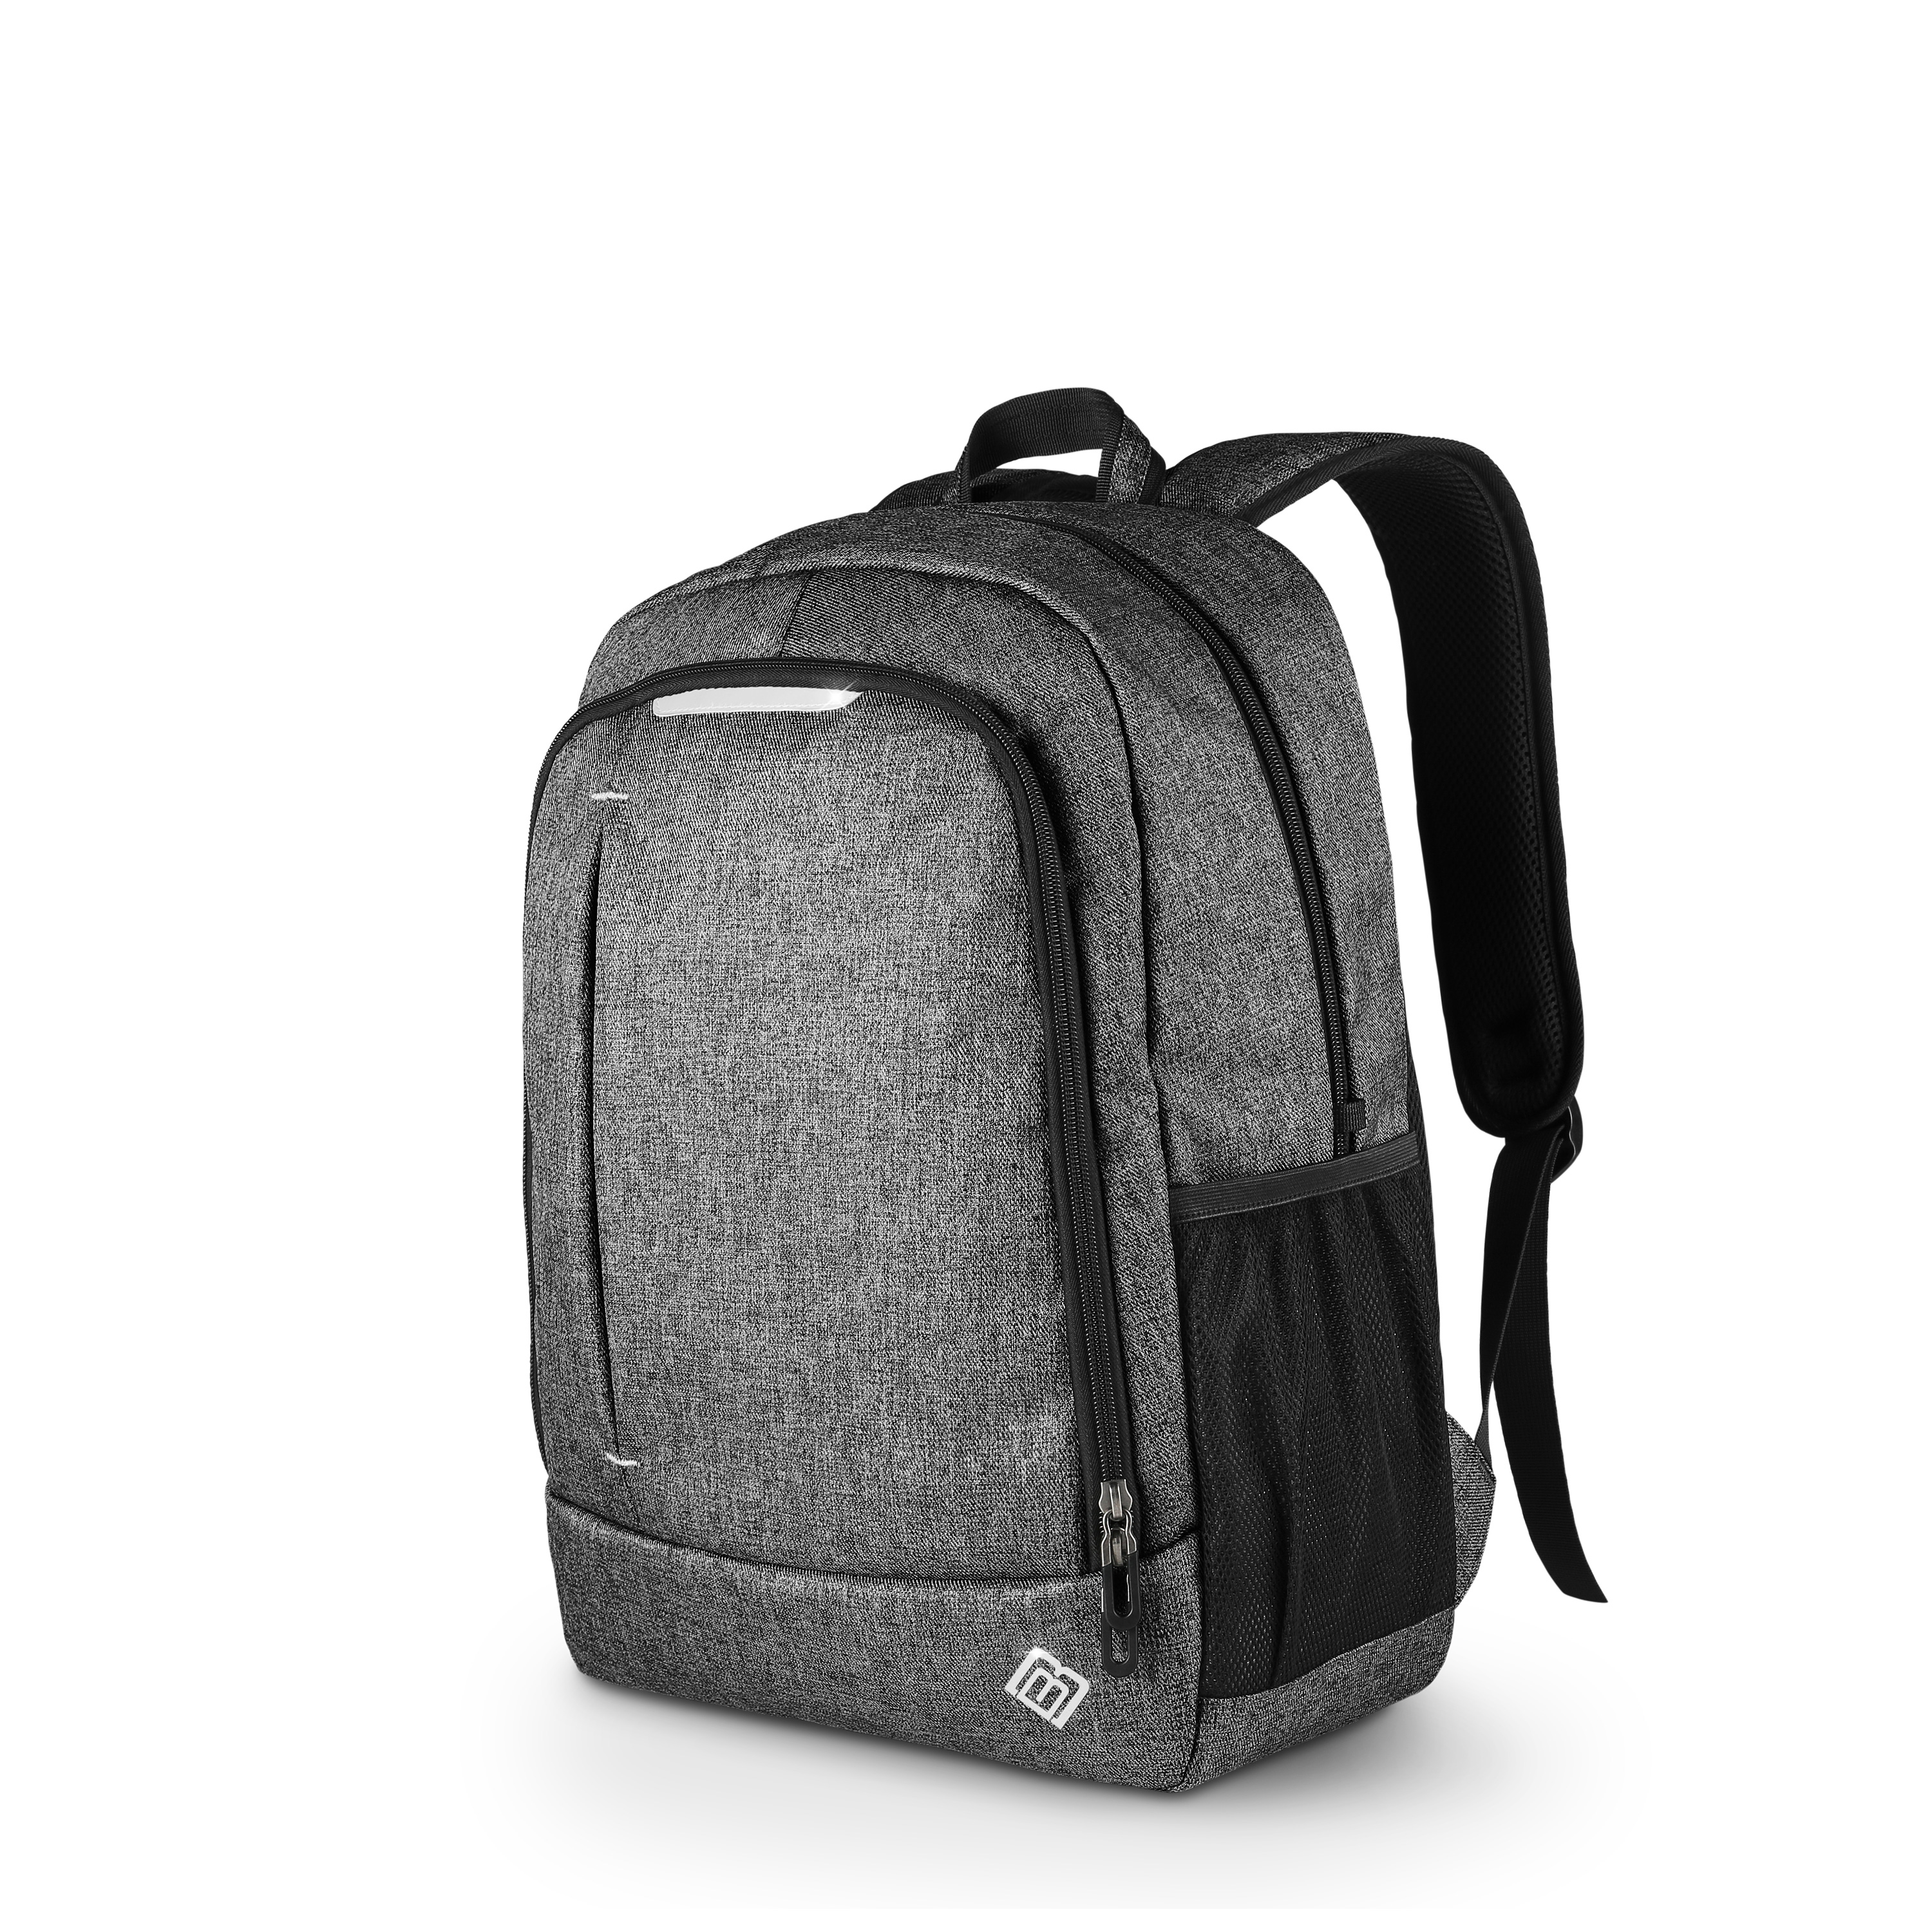 Textil/Stoff, BoostBag One grau BOOSTBOXX Rucksack grau Notebook-Rucksack Universal für